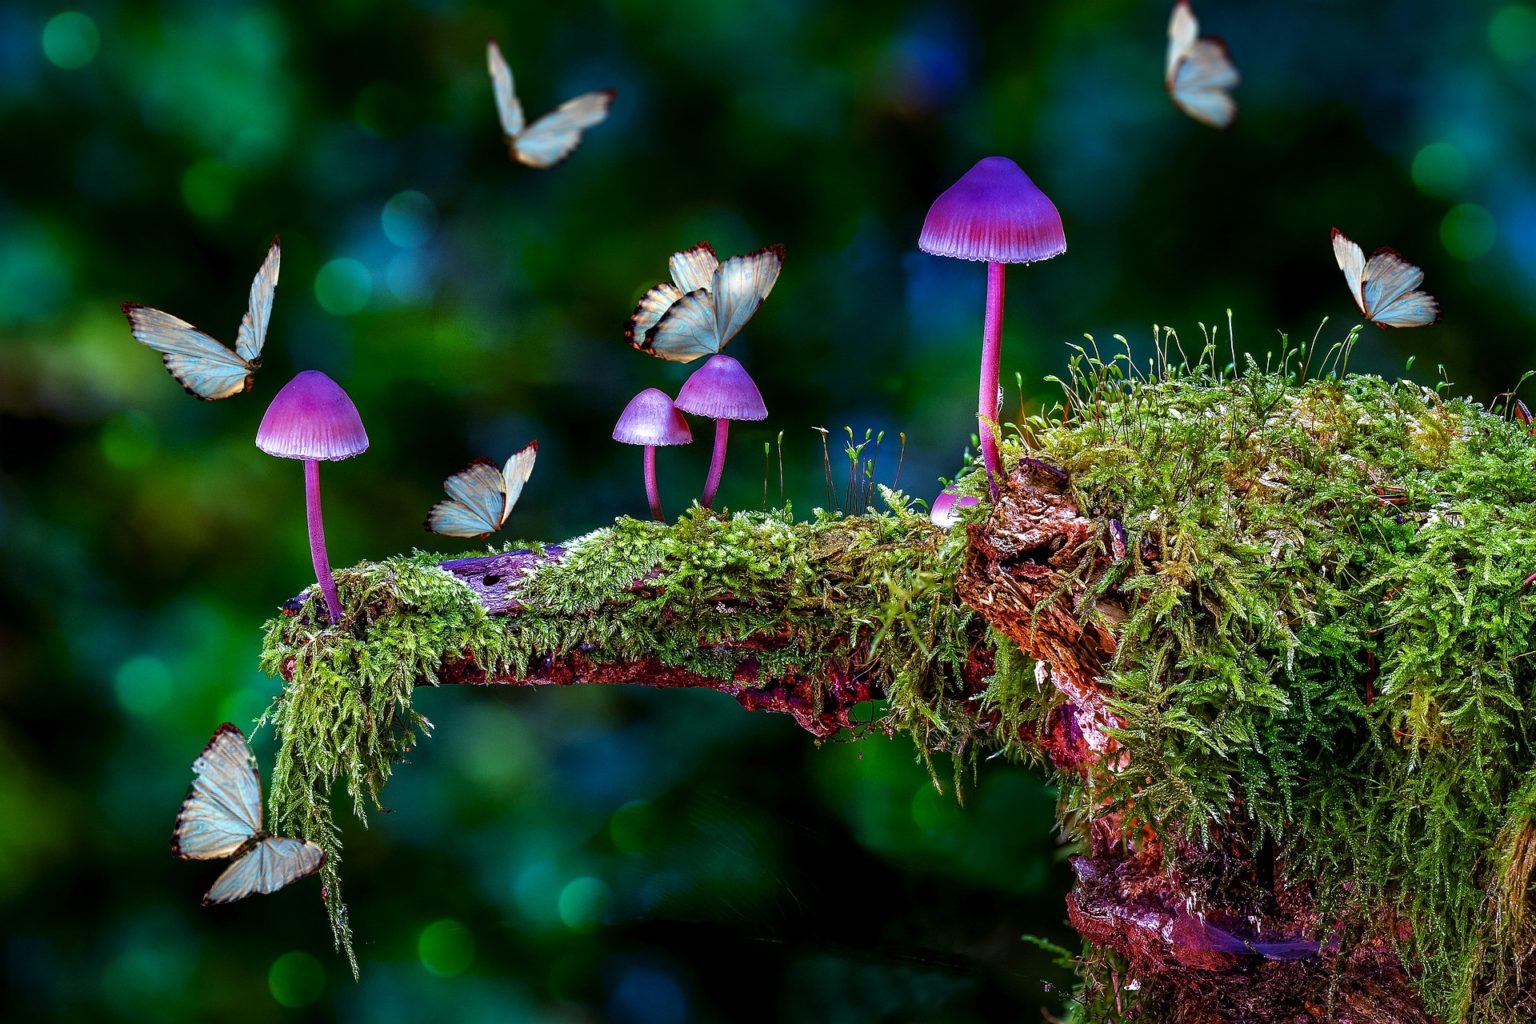 Галлюциногенные грибы  могут стать альтернативой антидепрессантам